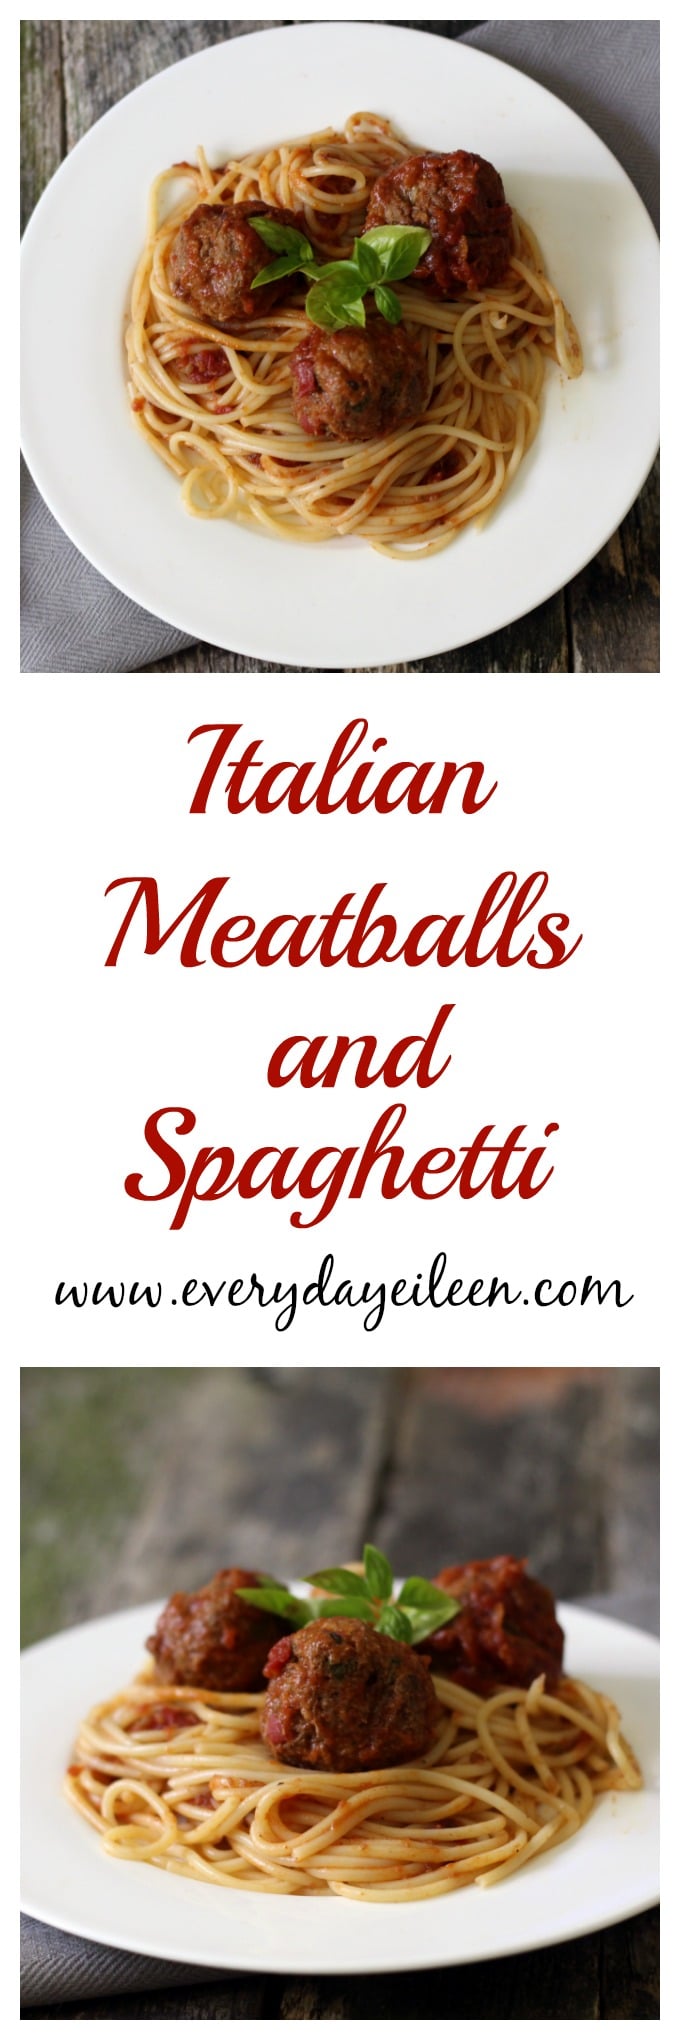 Italian meatballs and spaghetti